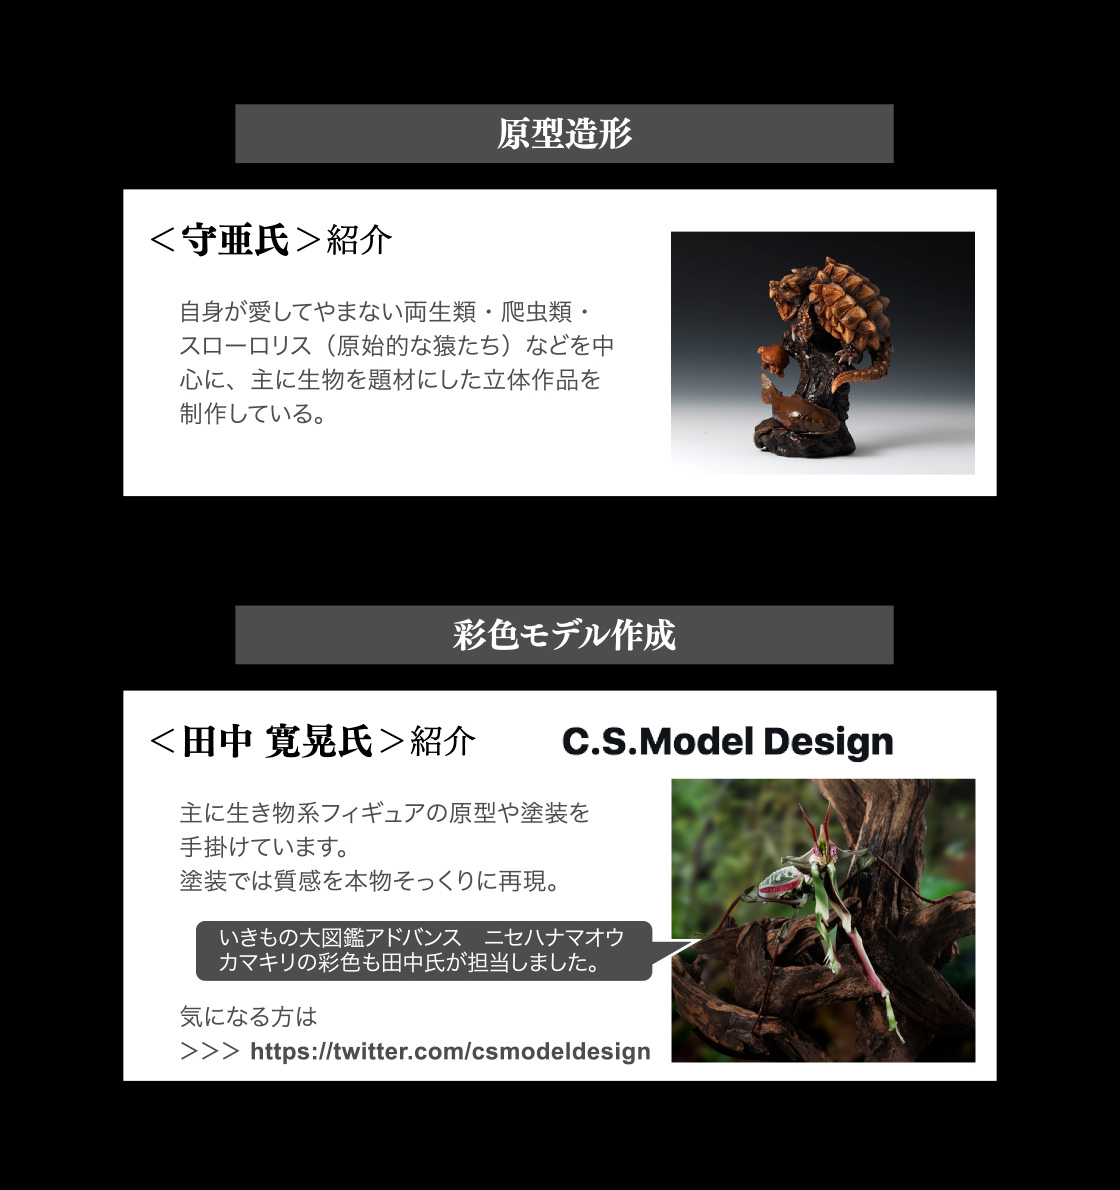 原型造形：守亜氏　彩色モデル作成：田中 寛晃氏(C.S.Model Design)